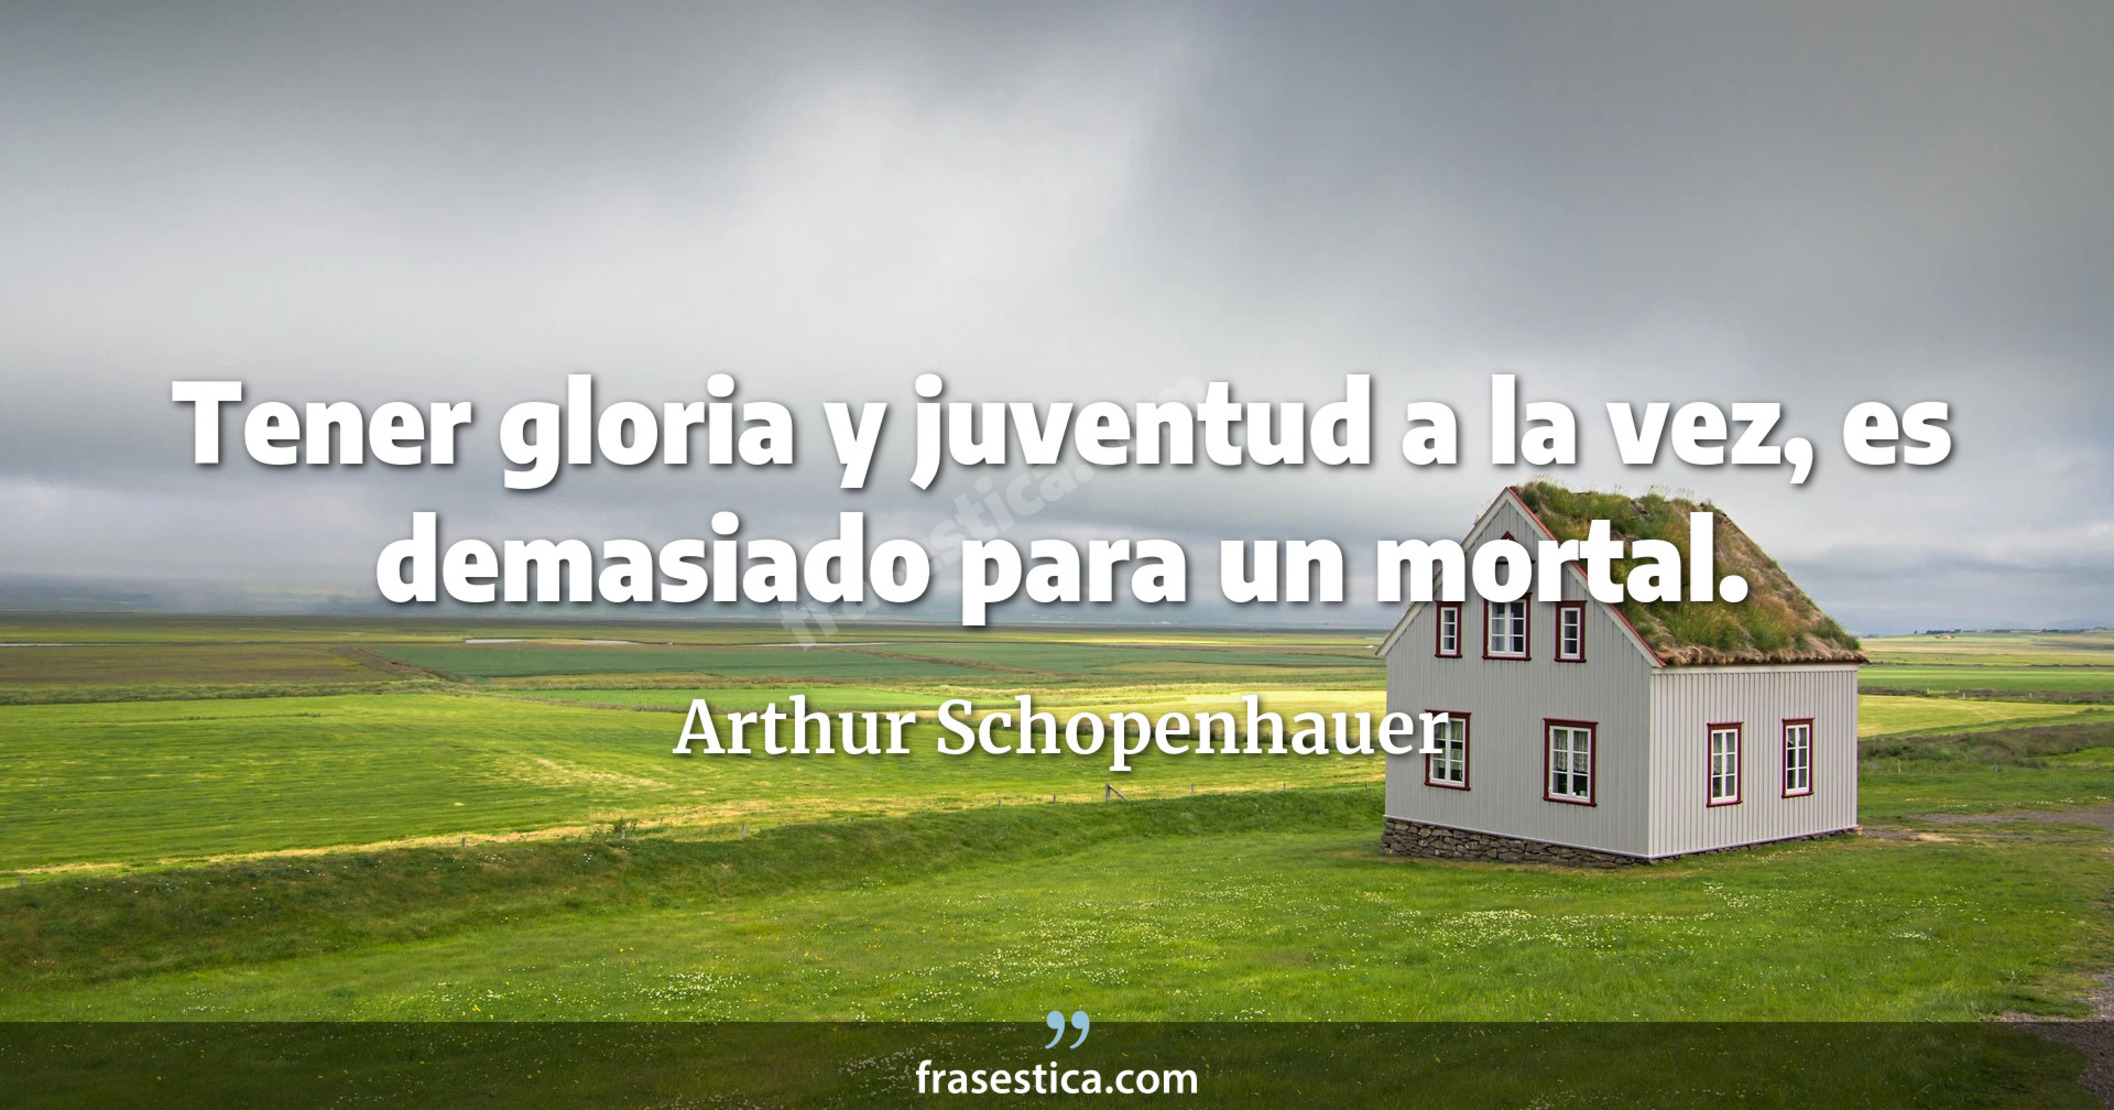 Tener gloria y juventud a la vez, es demasiado para un mortal. - Arthur Schopenhauer